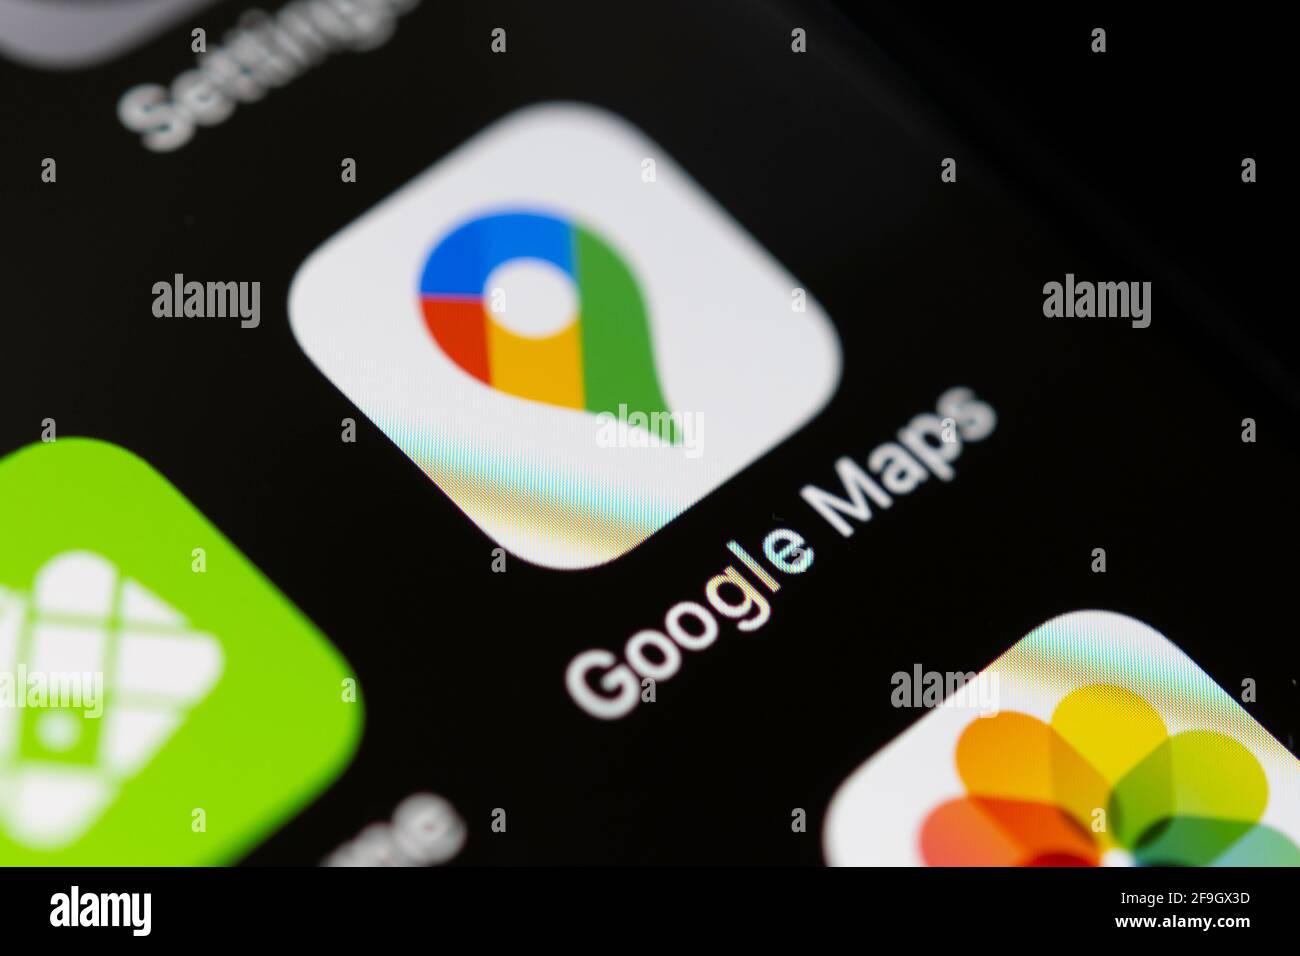 Google Maps, Online Karten Dienst, logo, App-icon, Anzeige auf einem Bildskirm vom Handy, smartphone, Makroaufnahme, Detail, formatfuellend Banque D'Images